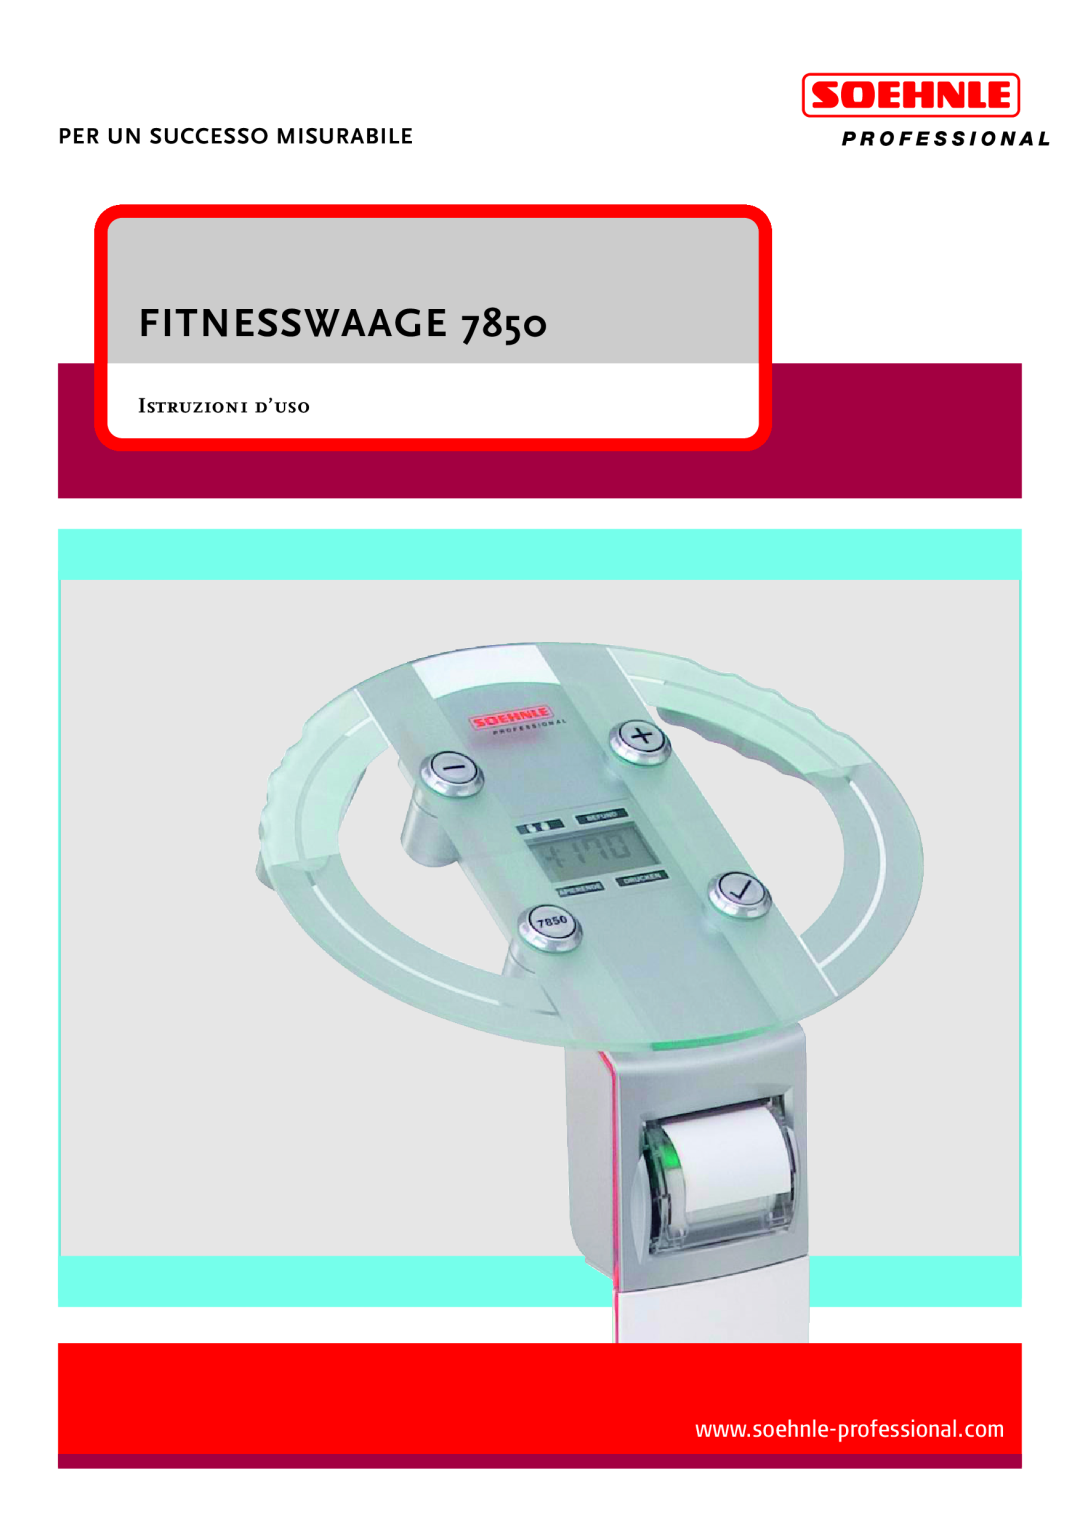 Soehnle 7850 manual Fitnesswaage, Per Un Successo Misurabile, Istruzioni d’uso 